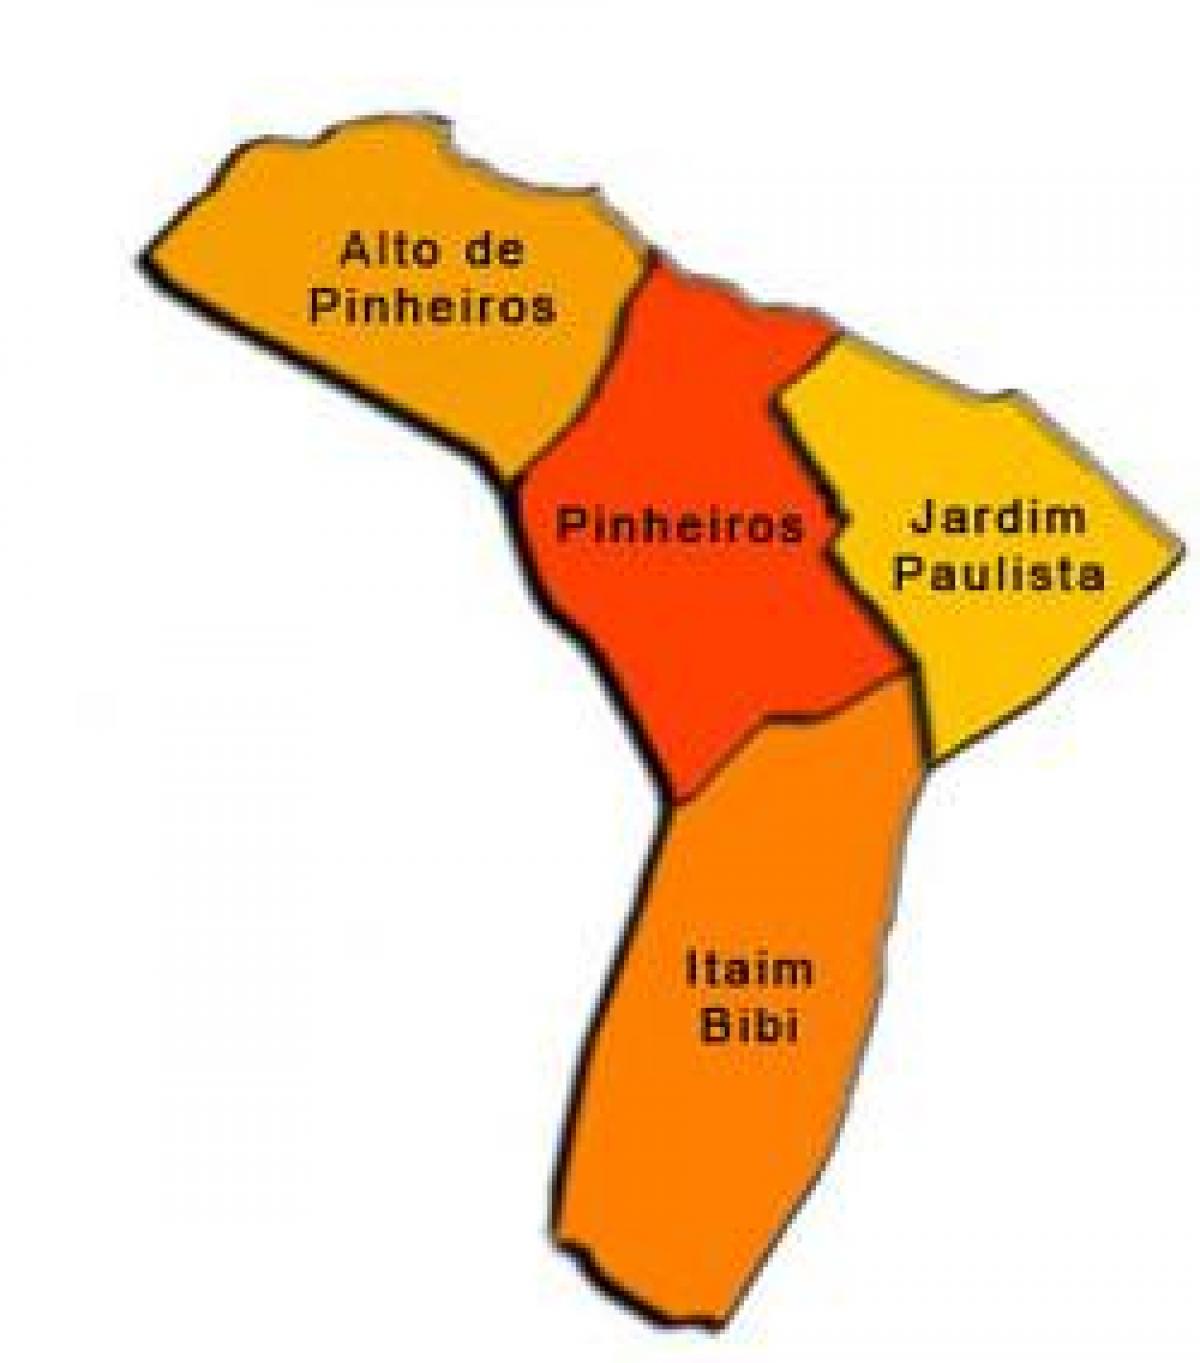 Карта суб-прэфектуры Пиньейросе